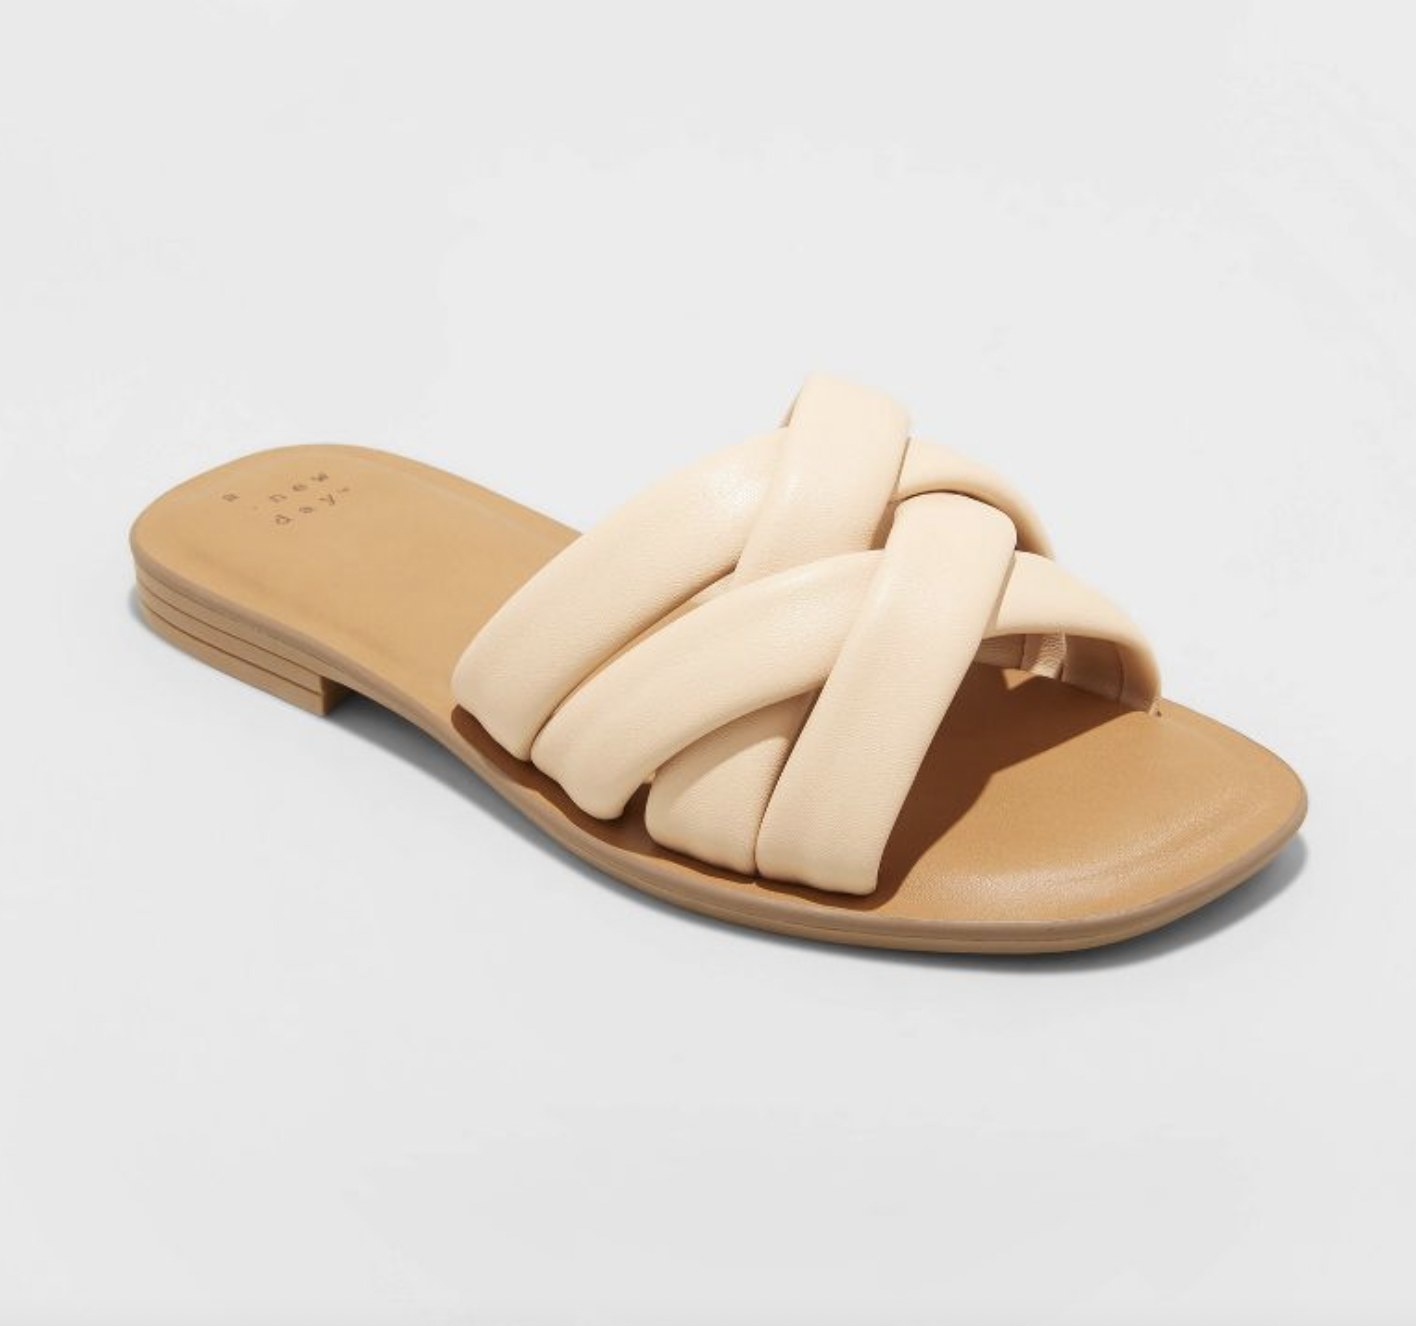 A woven tan sandal